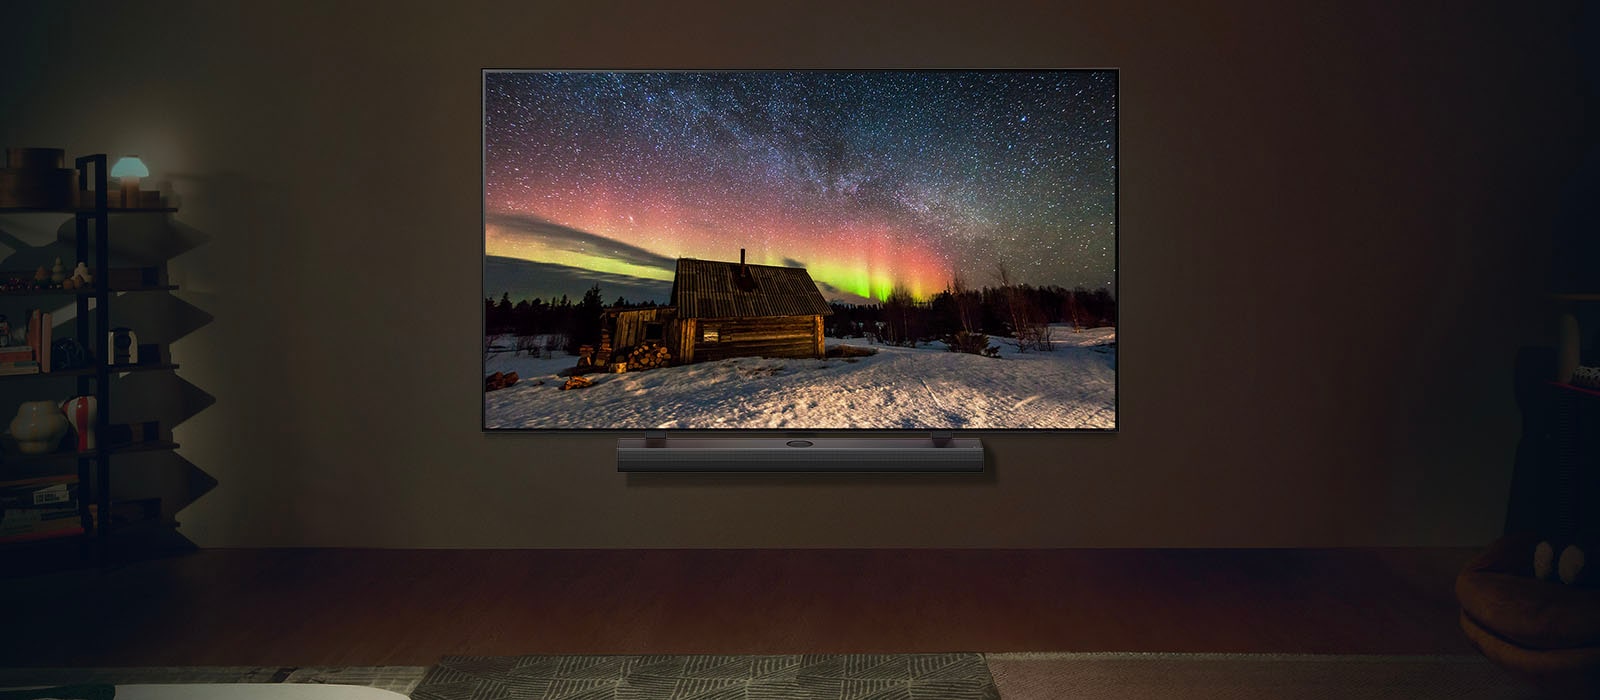 LG TV และ LG Soundbar ในพื้นที่อยู่อาศัยอันทันสมัยในเวลากลางคืน ภาพหน้าจอของแสงออโรร่า บอเรลลิส จะแสดงด้วยระดับความสว่างที่เหมาะสมที่สุด